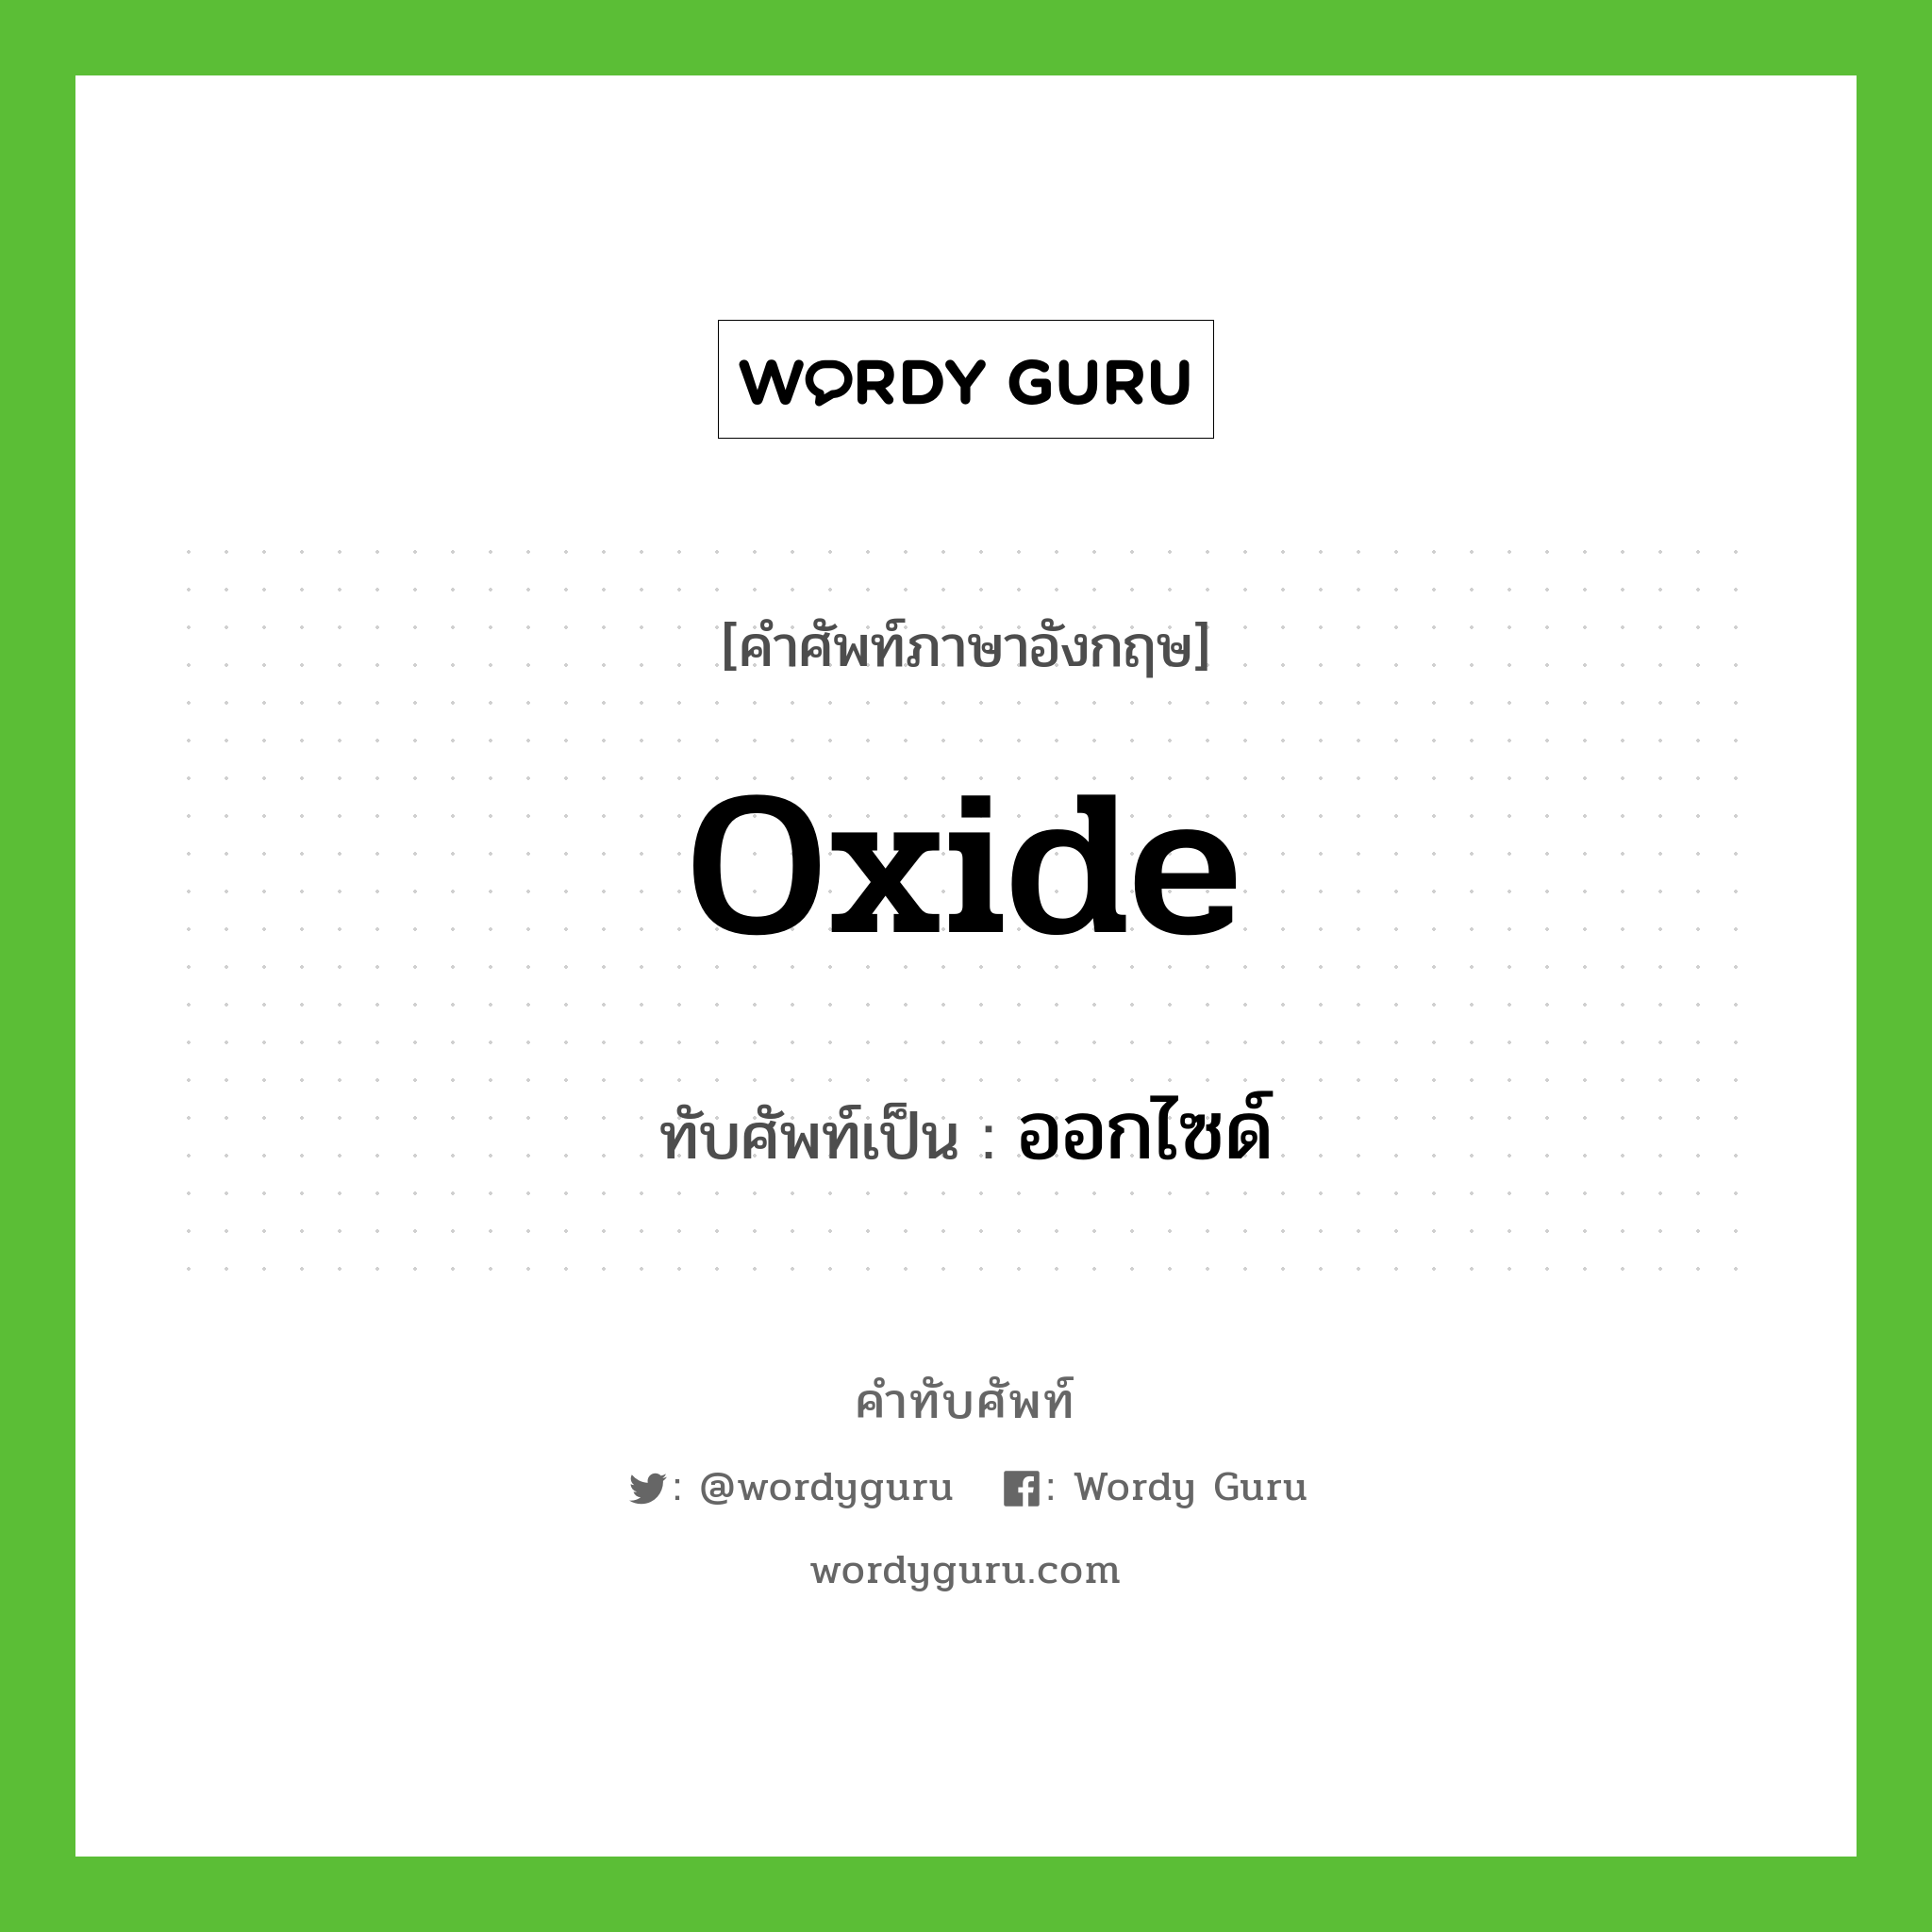 oxide เขียนเป็นคำไทยว่าอะไร?, คำศัพท์ภาษาอังกฤษ oxide ทับศัพท์เป็น ออกไซด์